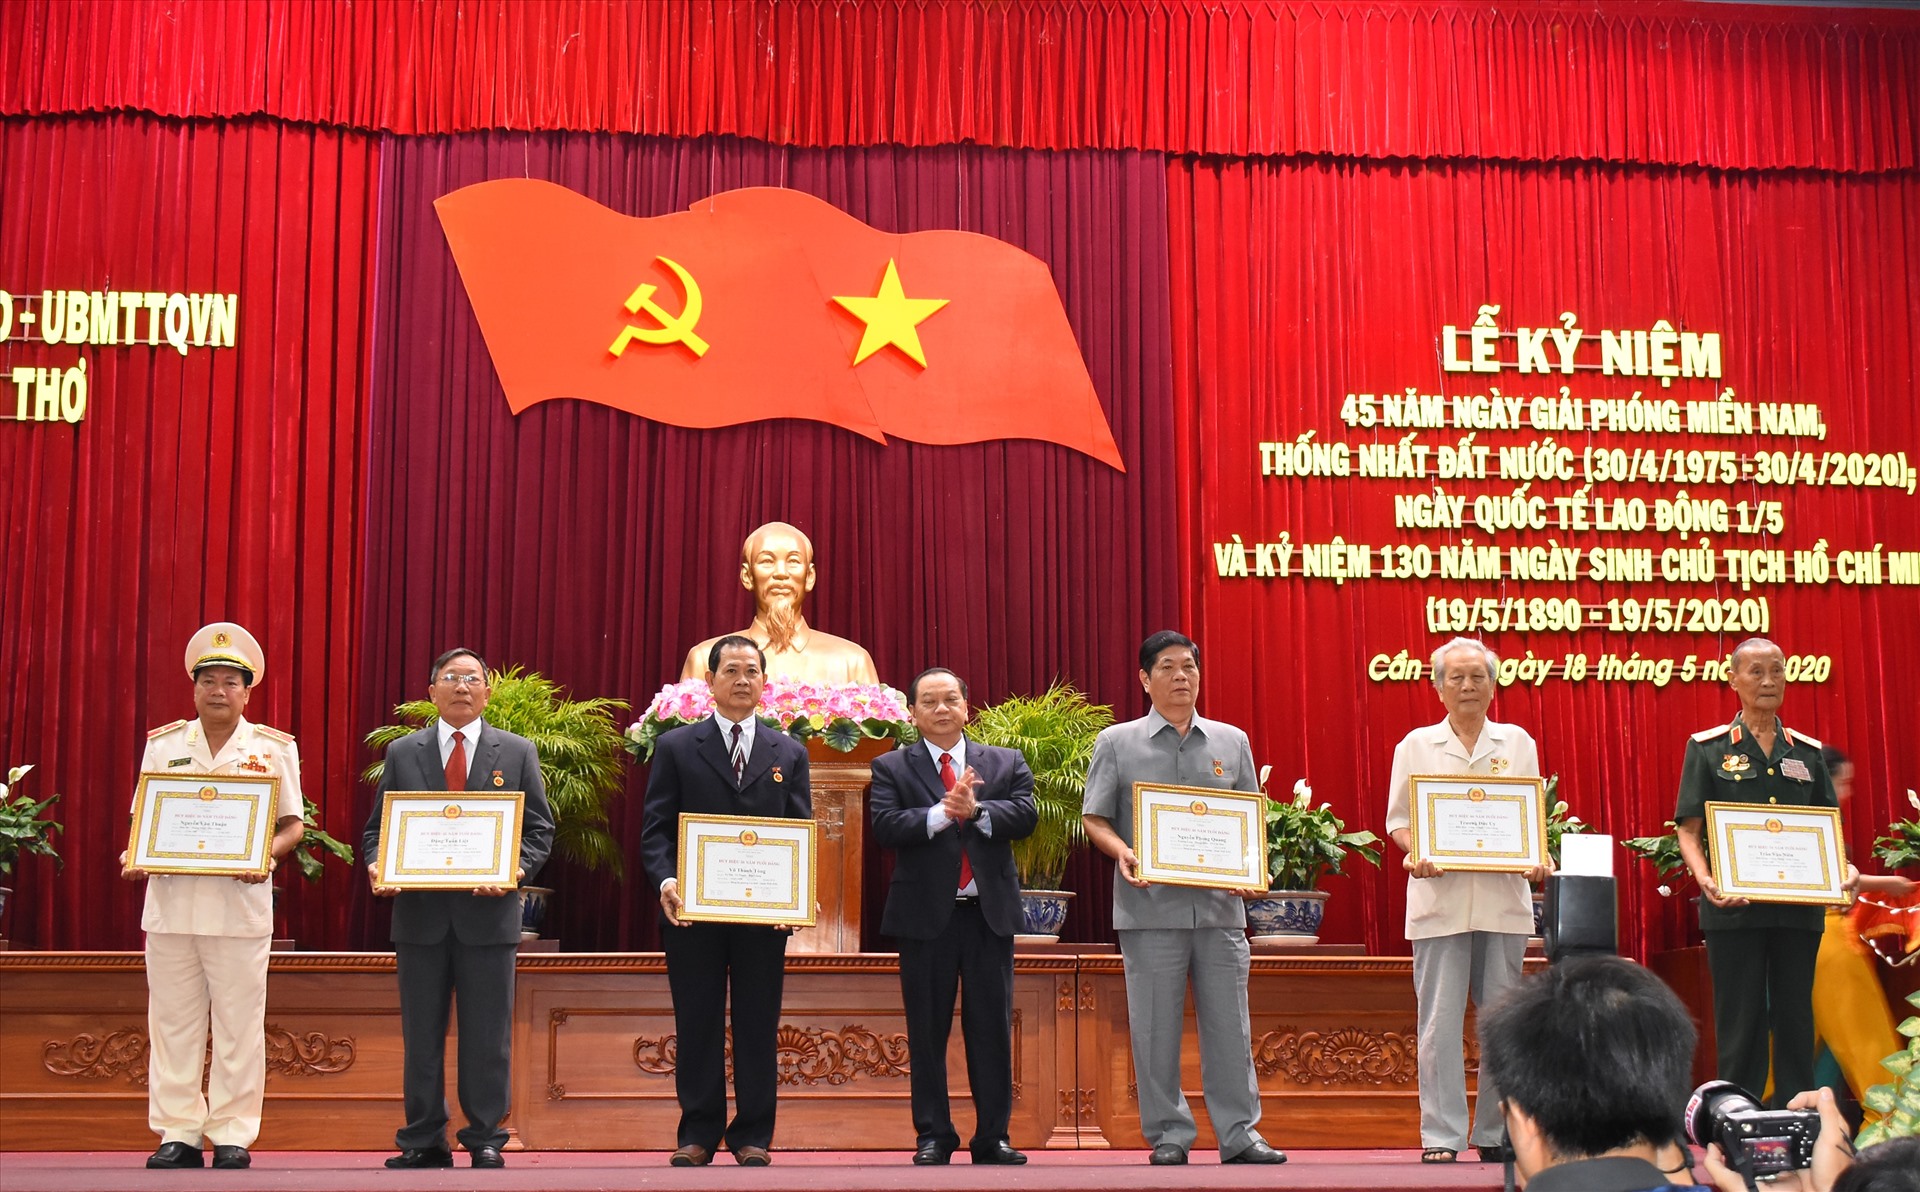 Ông Trần Quốc Trung, Bí thư Thành Ủy Cần Thơ - chúc mừng và trao huy hiệu Đảng cho 6 đồng chí tại buổi lễ long trọng này. Ảnh: Thành Nhân